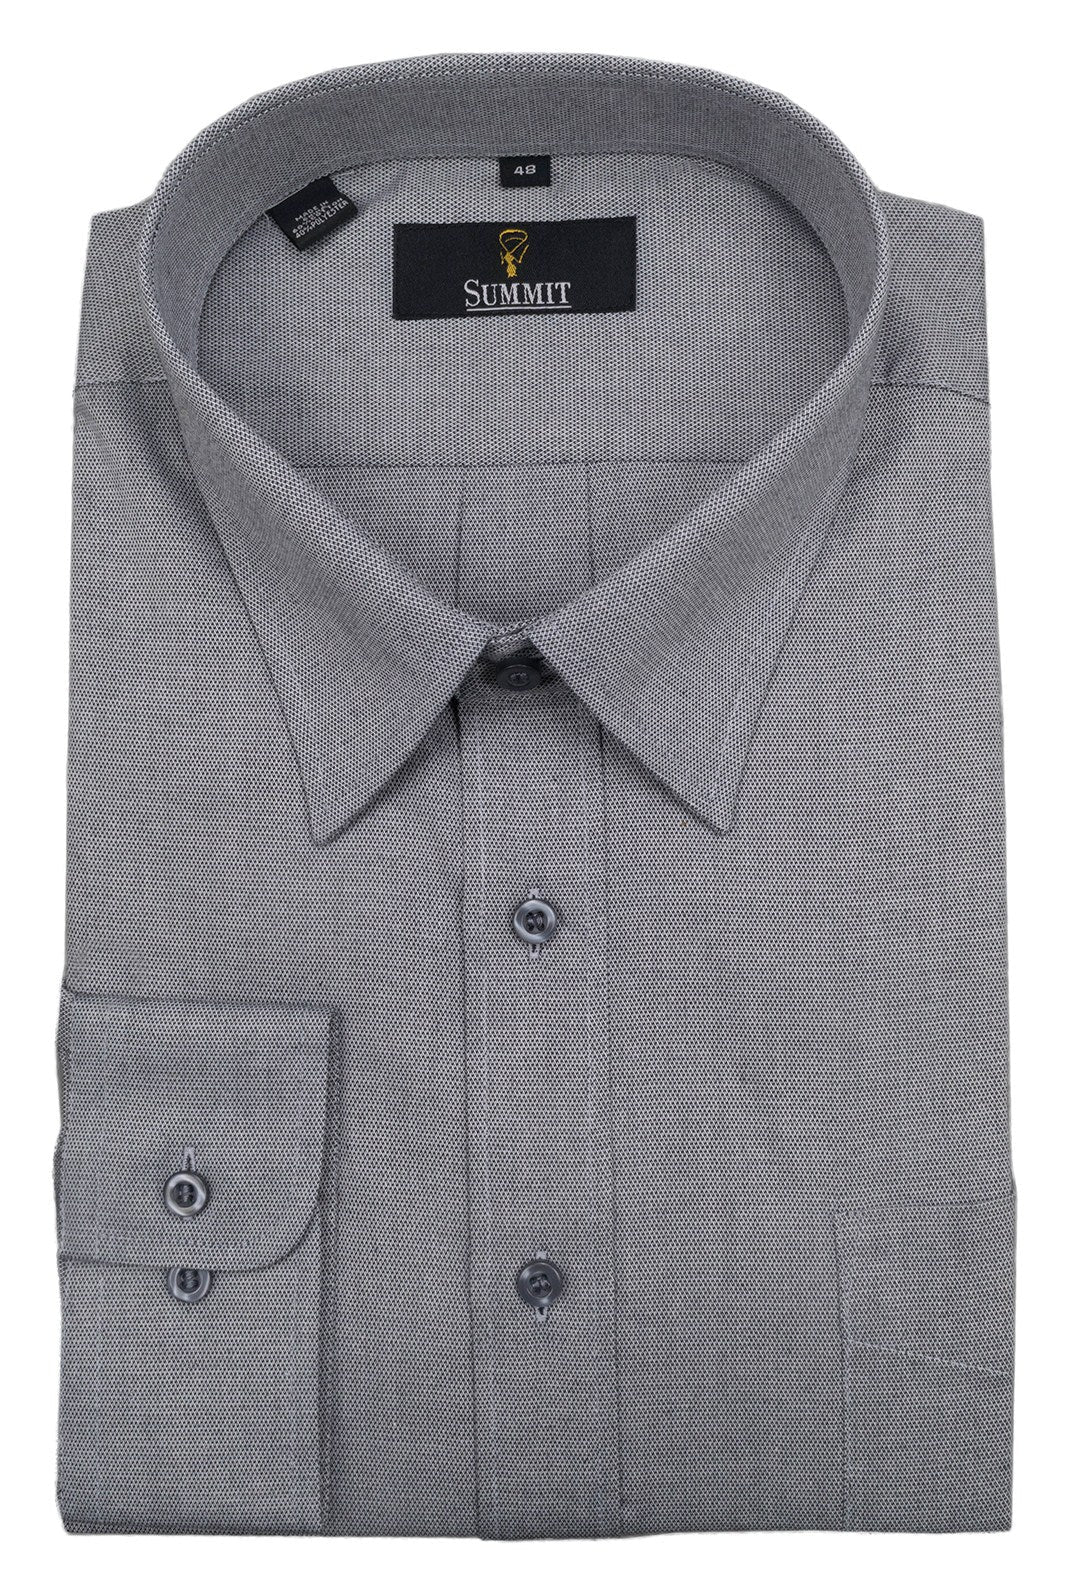 Black Label 22923 Shirt - Thomson's Suits Ltd - 14 Blue - 41 - 29168